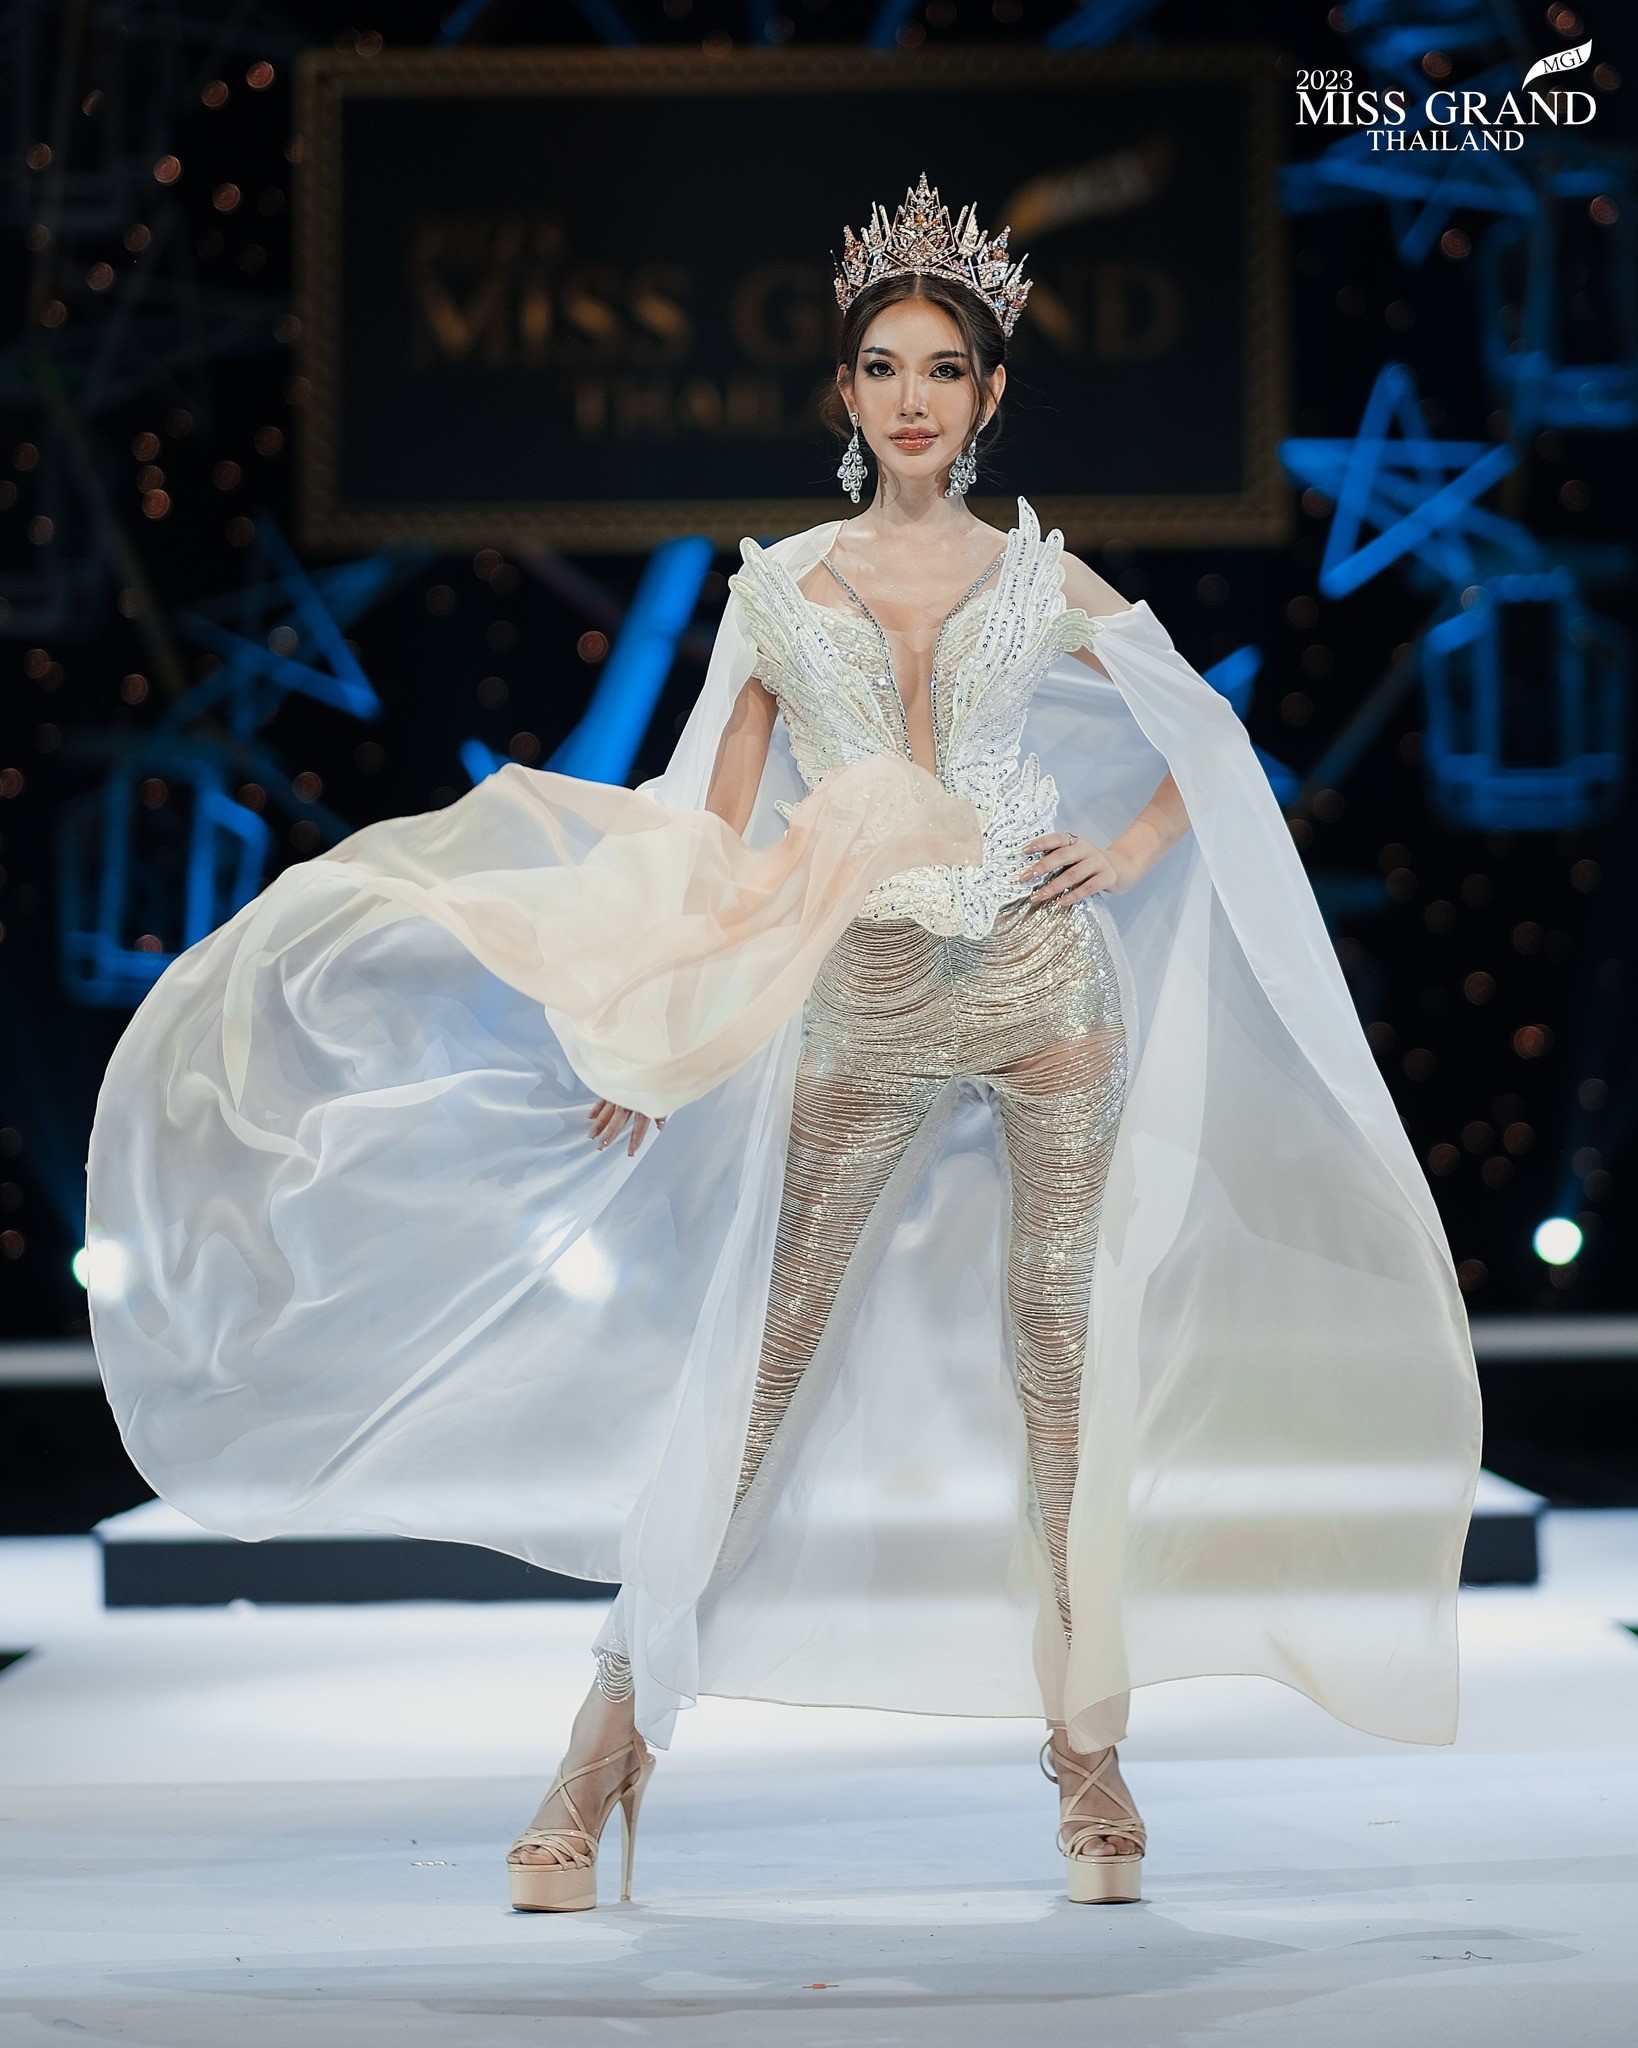 Váy áo cắt xẻ phản cảm tràn ngập Hoa hậu Hòa bình Thái Lan - Ảnh 5.